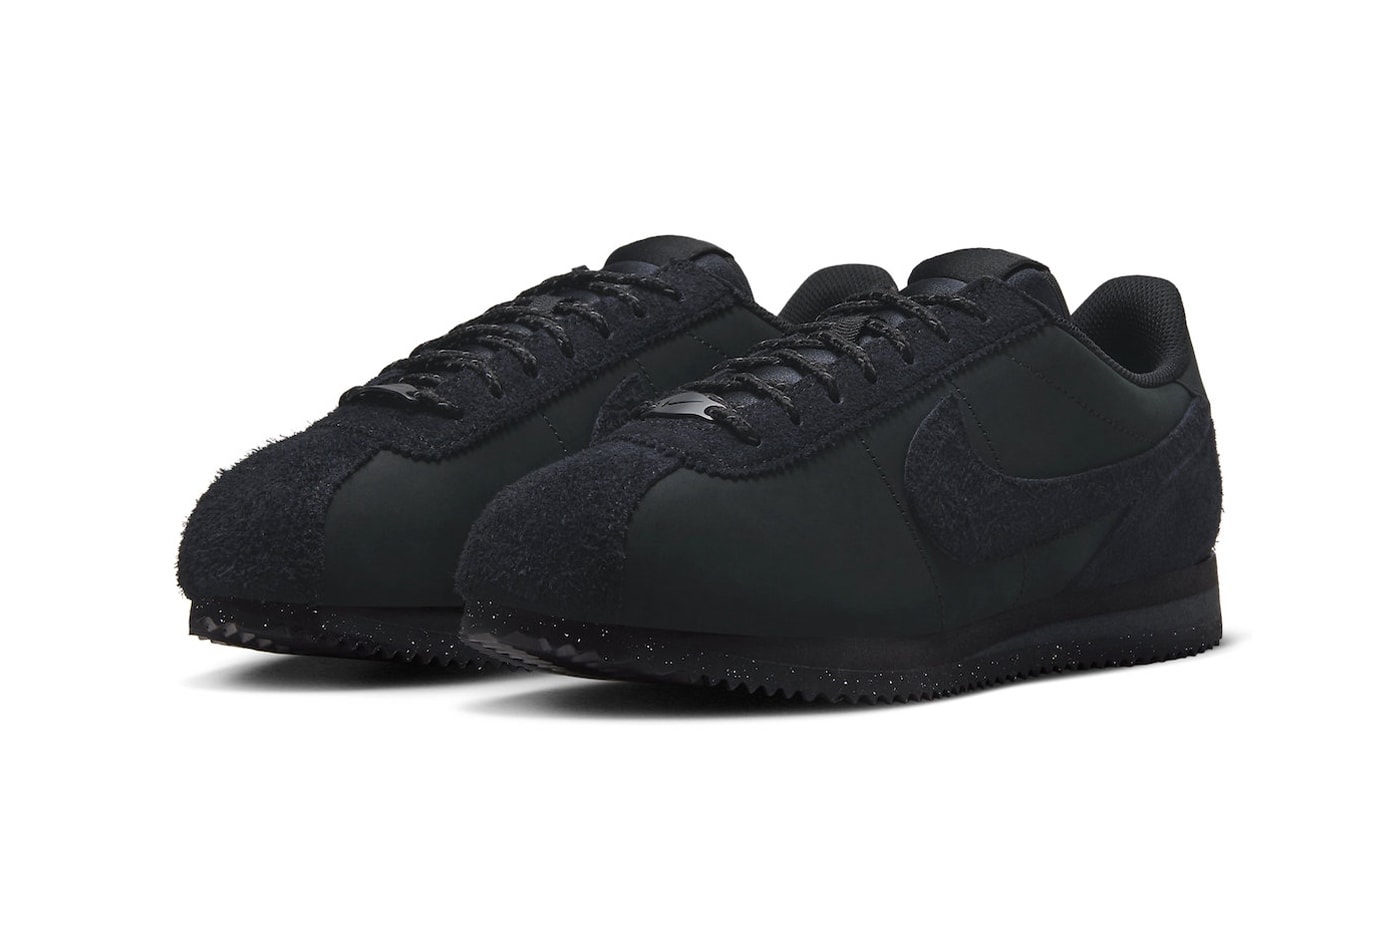 ナイキ コルテッツからシックな印象の最新作 “トリプル ブラック”が登場か Nike Cortez PRM Surfaces in "Triple Black" and Shaggy Suede Details release info premium